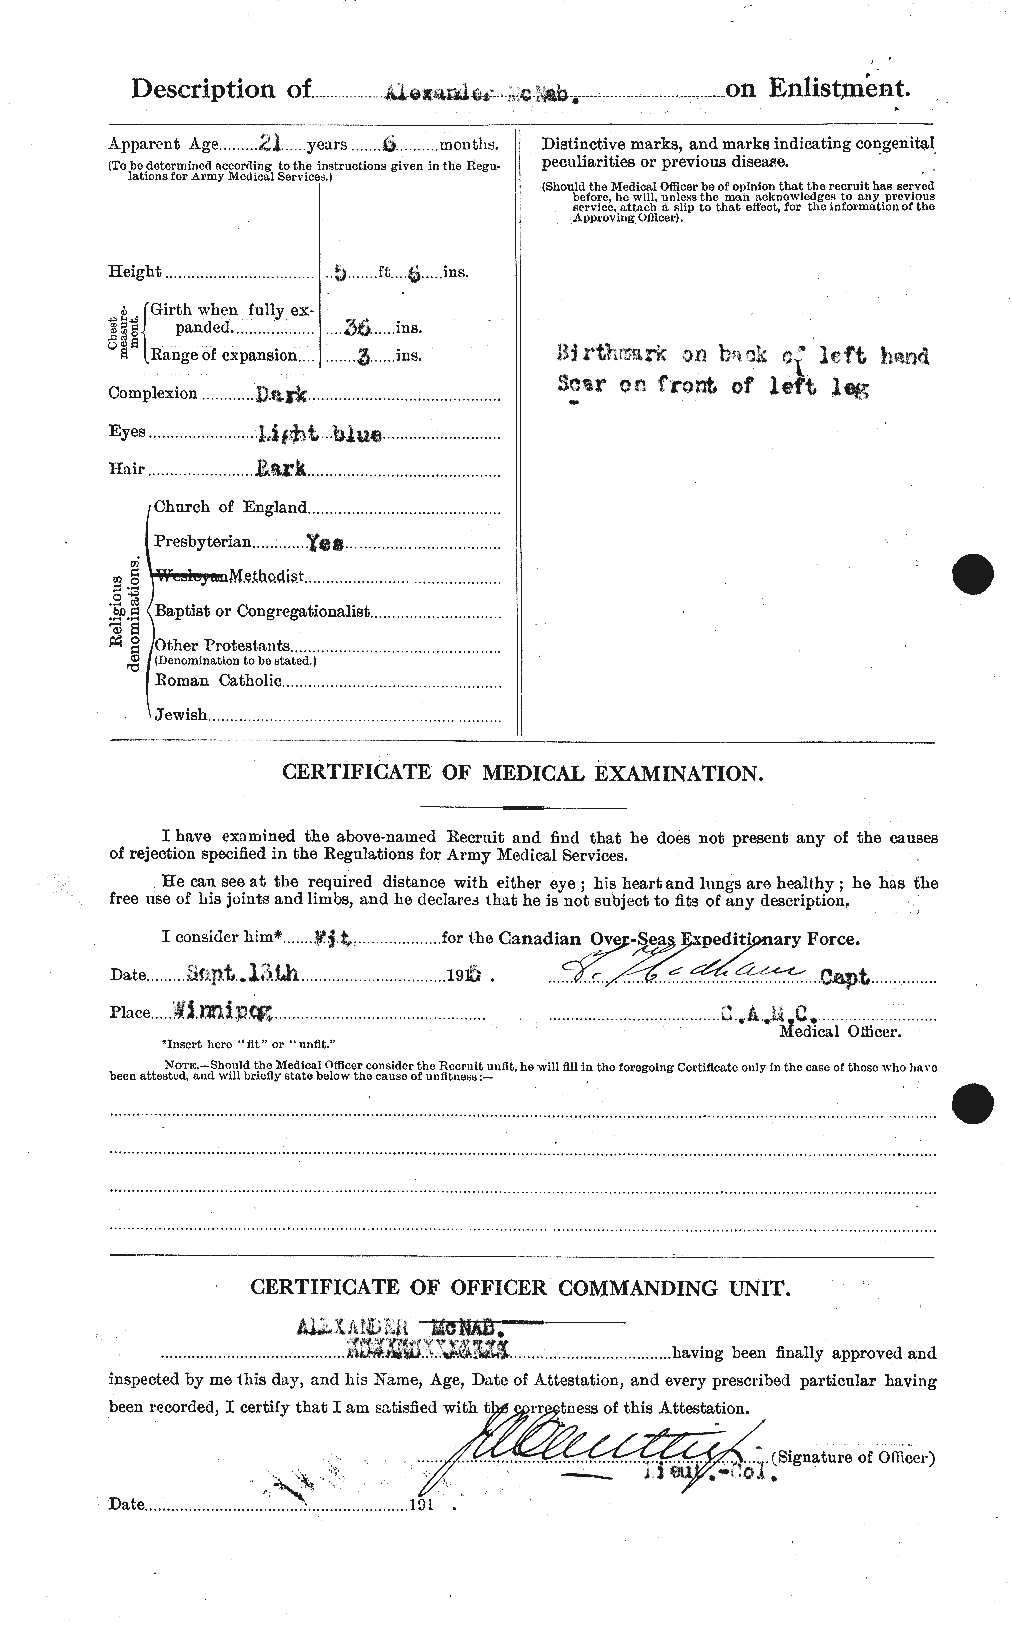 Dossiers du Personnel de la Première Guerre mondiale - CEC 539509b